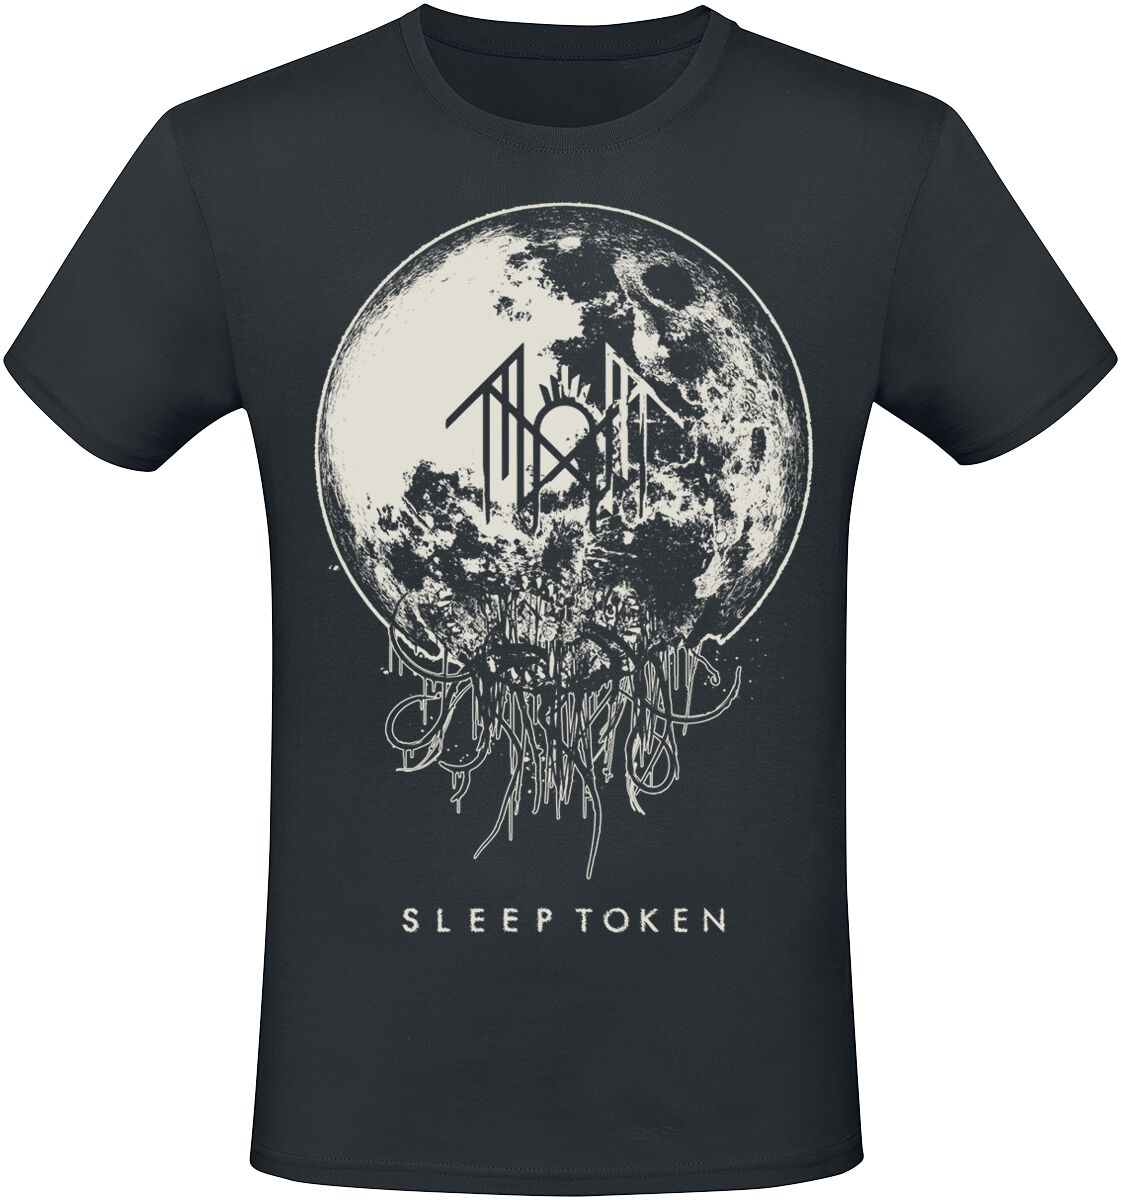 Sleep Token T-Shirt - Take Me Back To Eden - S bis 4XL - für Männer - Größe 3XL - schwarz  - EMP exklusives Merchandise!